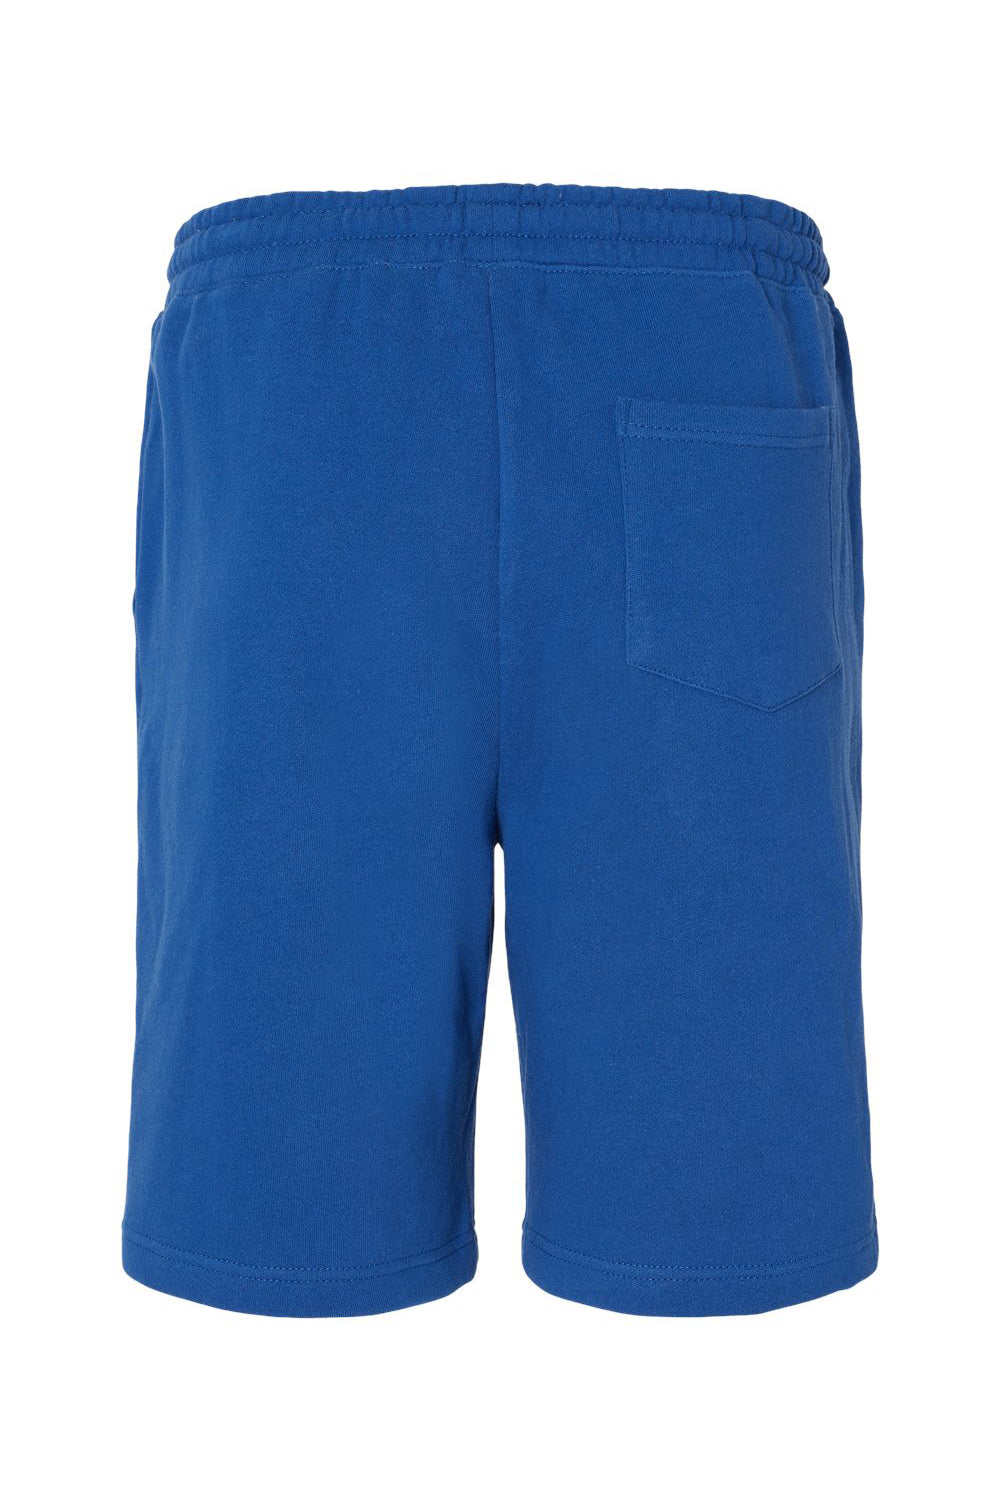 Independent Trading Co. IND20SRT Mens Fleece Shorts w/ Pockets Royal Blue Flat Back